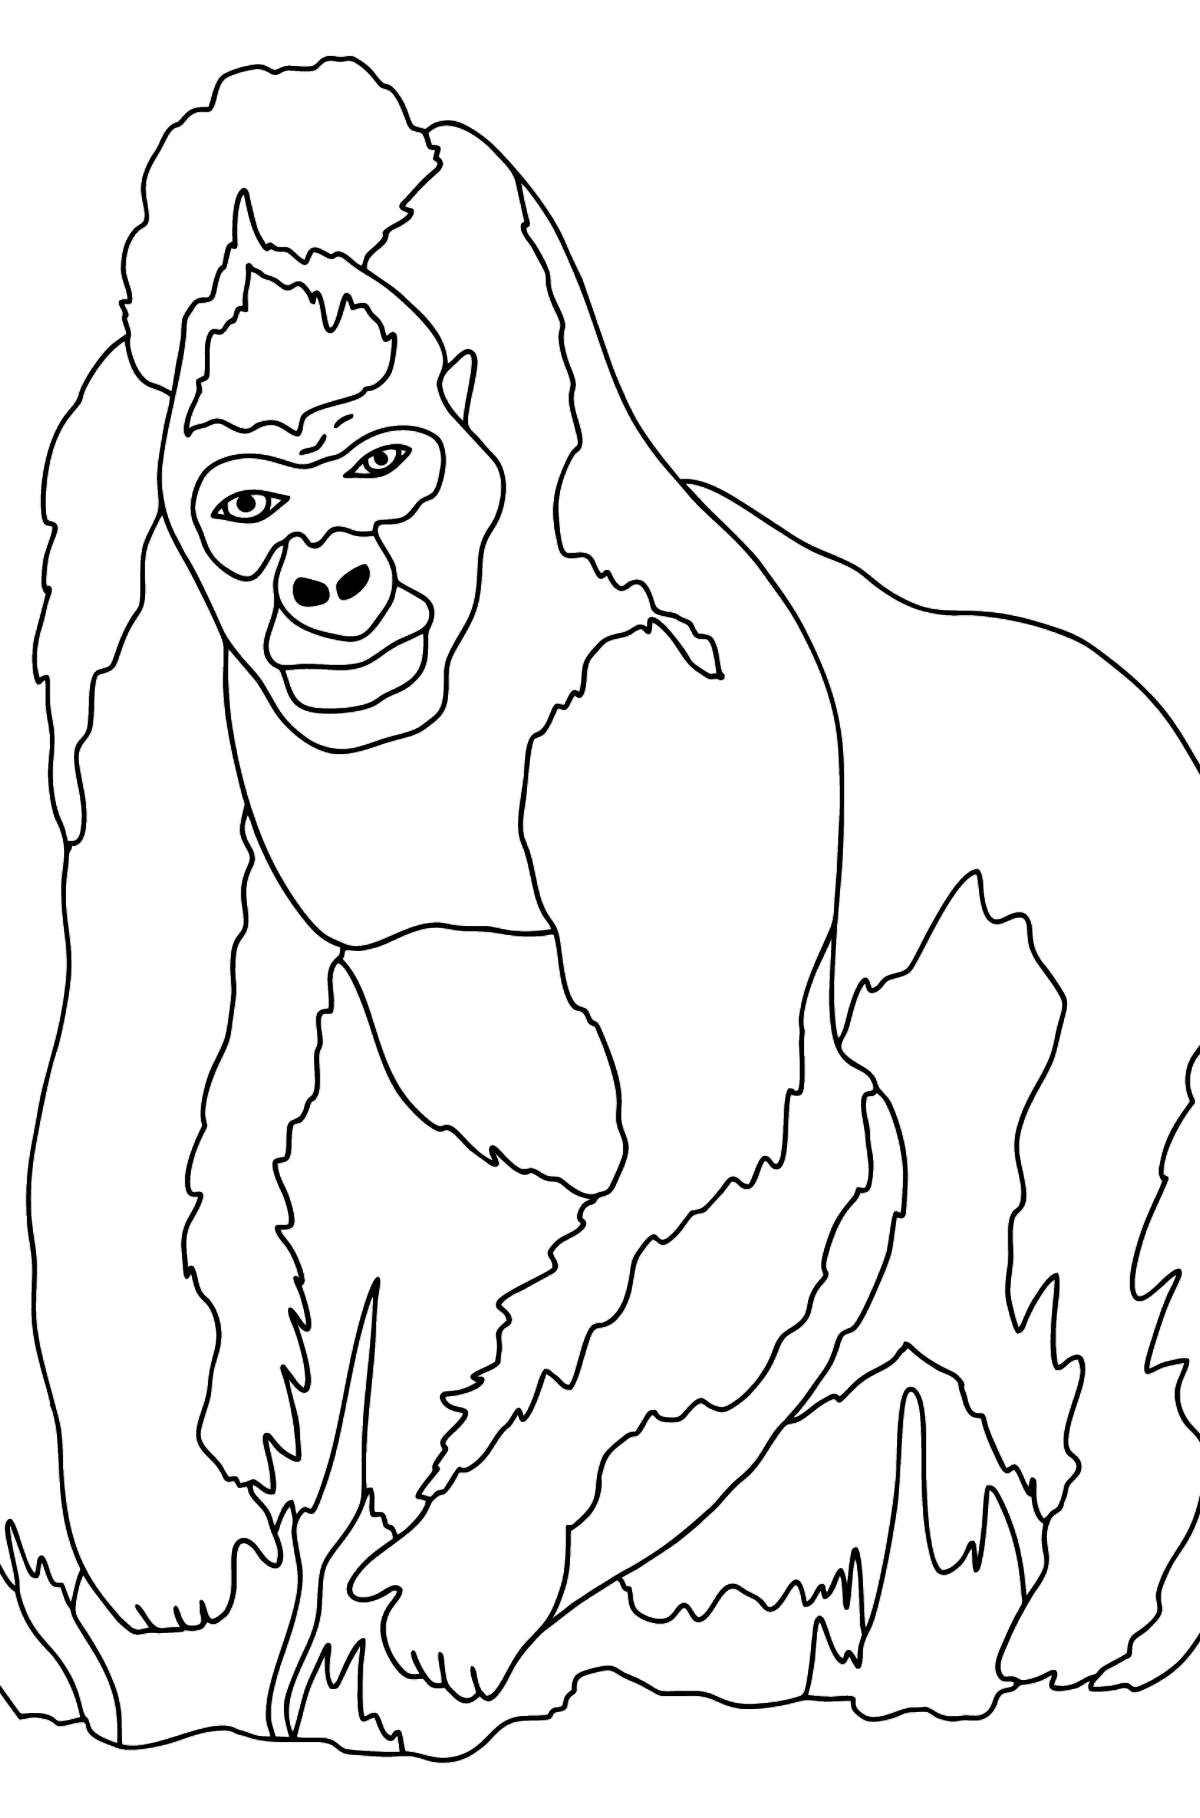 Boyama sayfası goril (zor) - Boyamalar çocuklar için